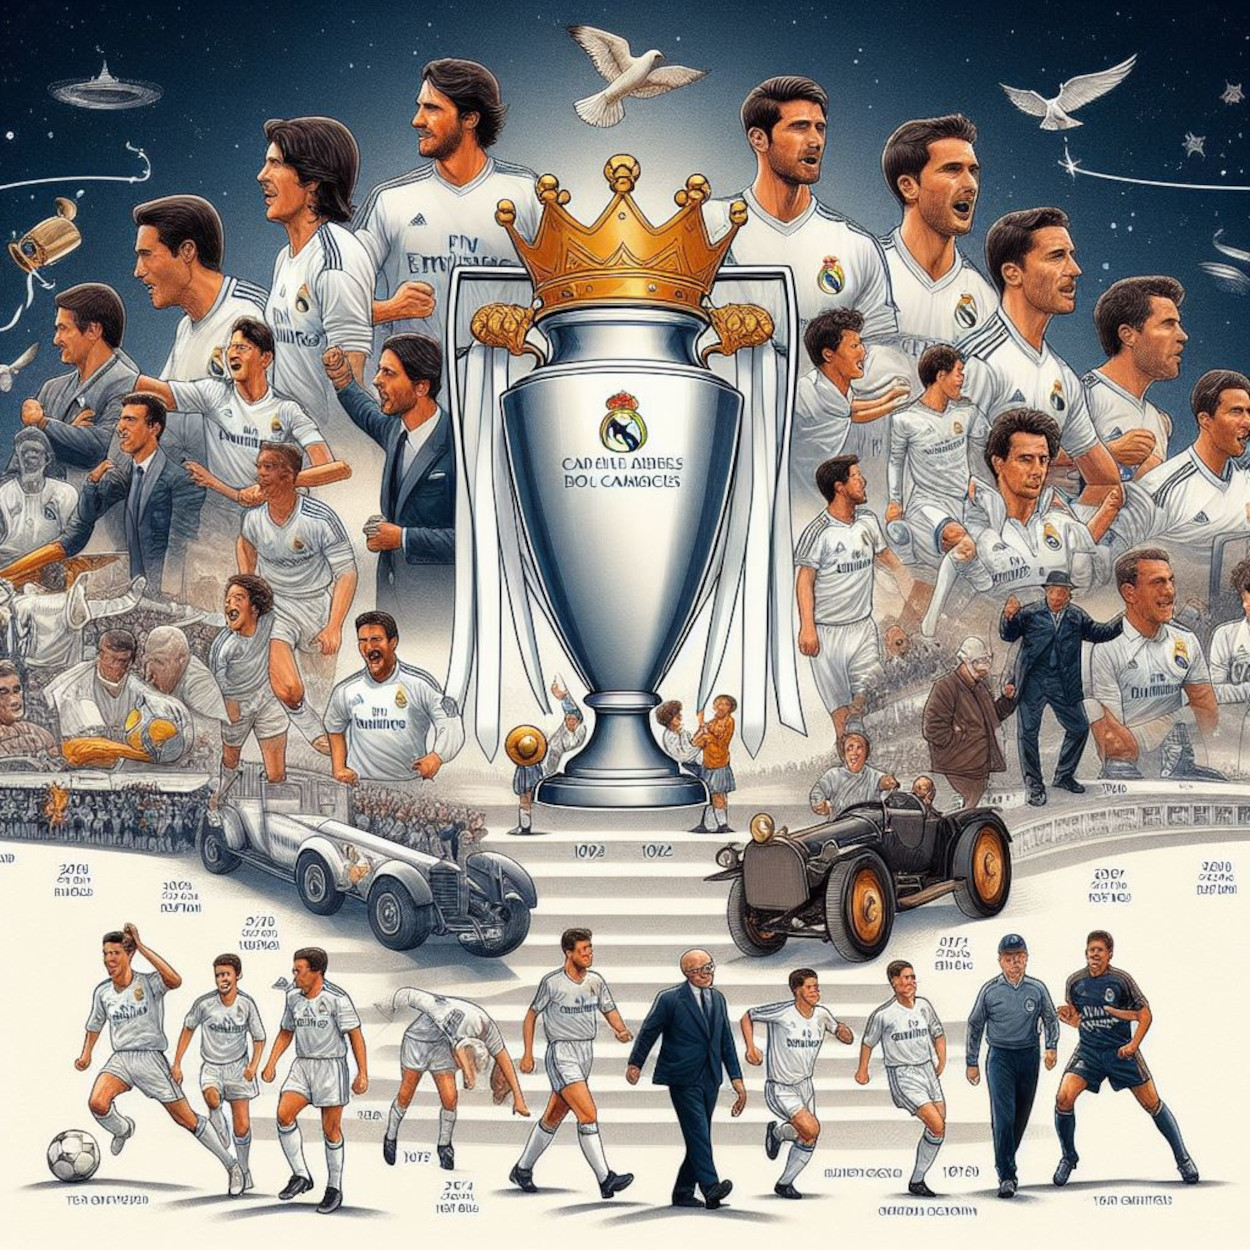 Los 10 Momentos Más Importantes en la Historia del Real Madrid